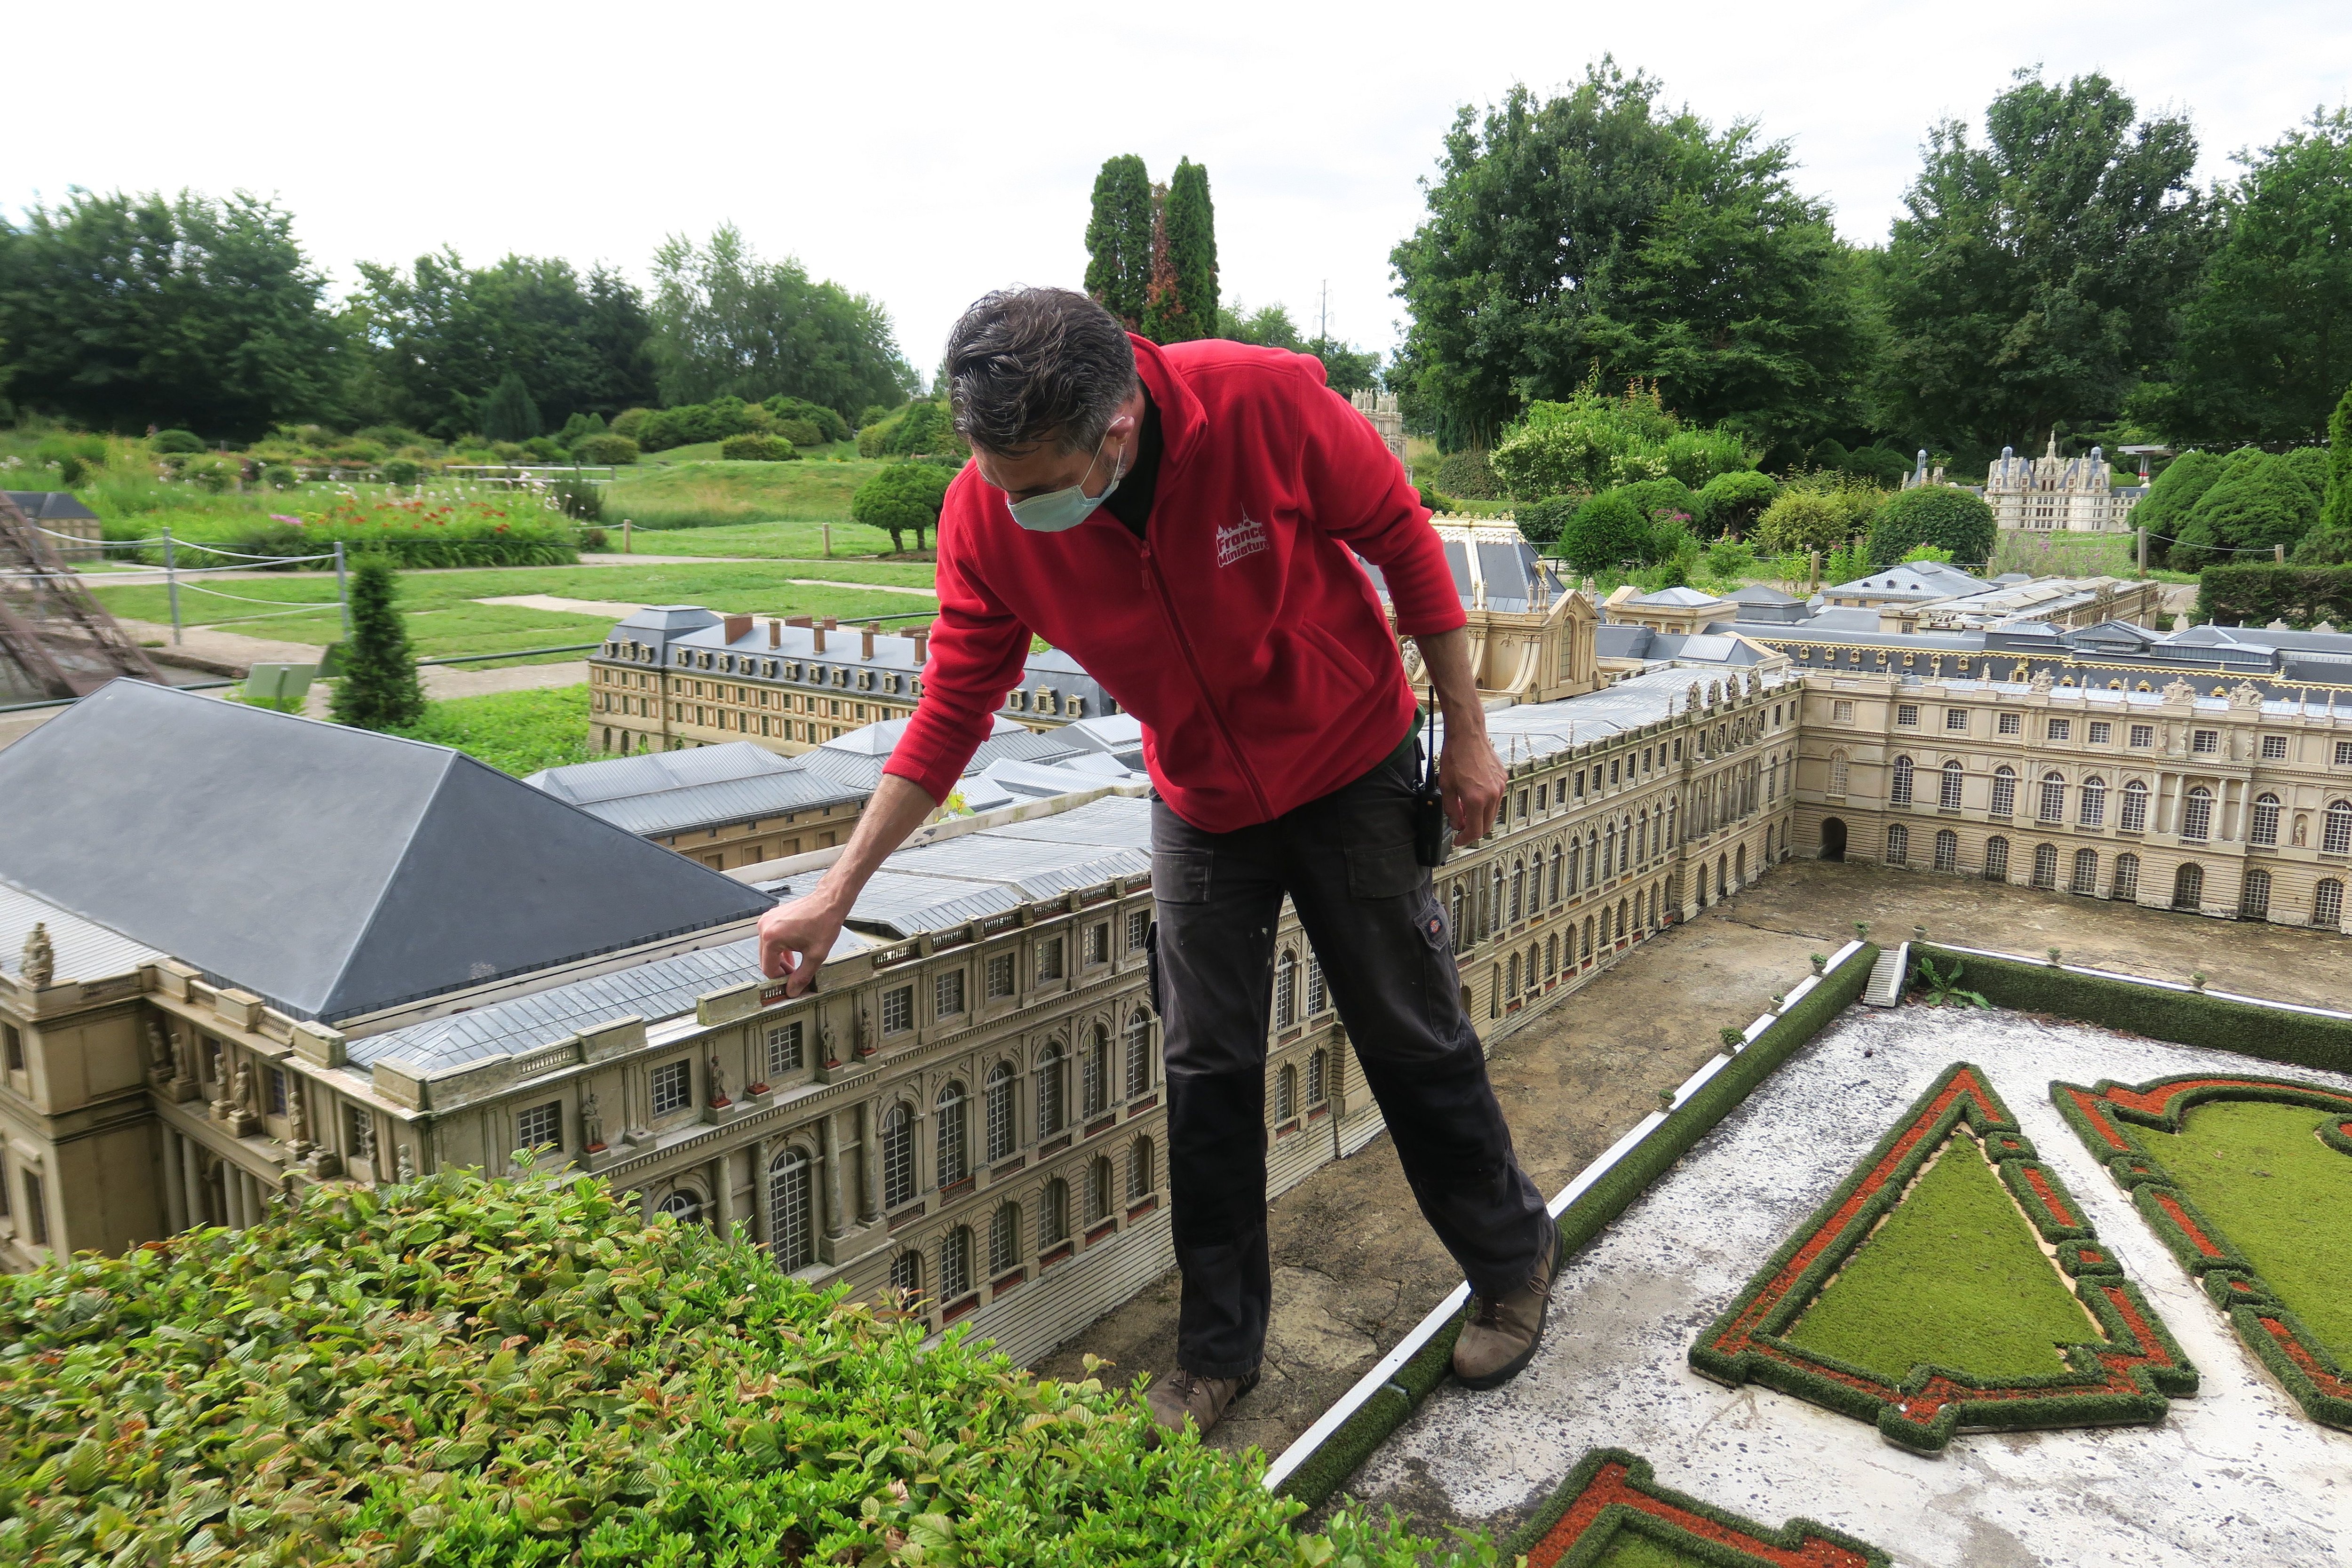 Nicolas Salerno, responsable des maquettes du parc France Miniature, à Élancourt (Yvelines), depuis 2018 observe chaque détail pour faire les rénovations nécessaires. LP/Julie Ménard